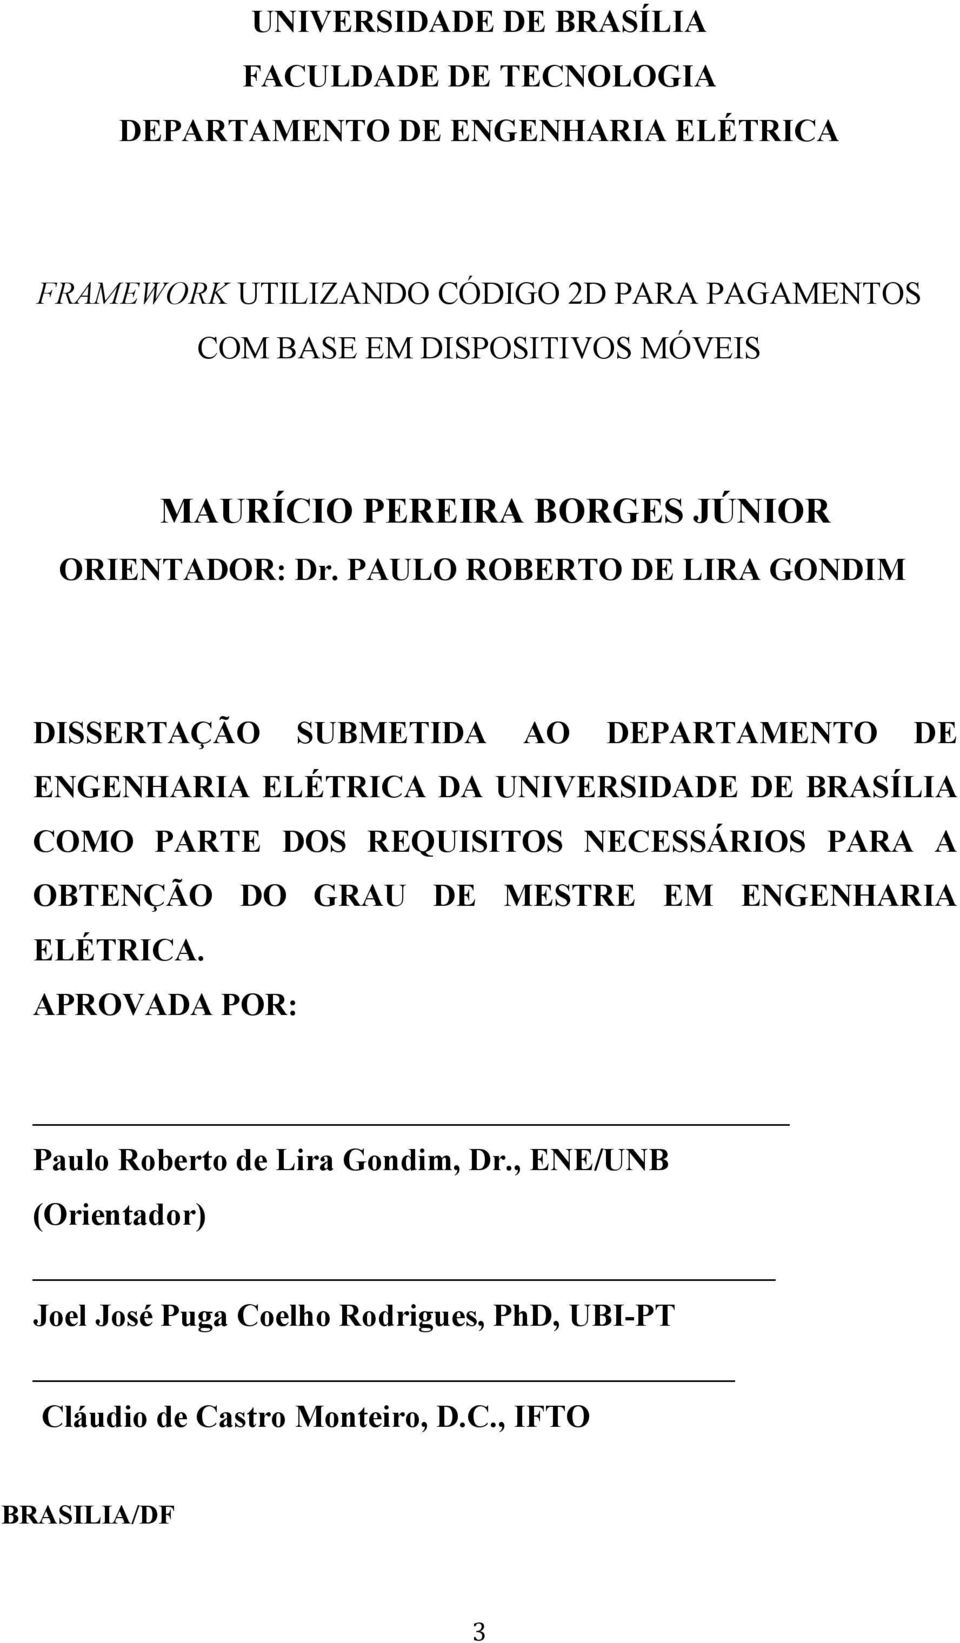 PAULO ROBERTO DE LIRA GONDIM DISSERTAÇÃO SUBMETIDA AO DEPARTAMENTO DE ENGENHARIA ELÉTRICA DA UNIVERSIDADE DE BRASÍLIA COMO PARTE DOS REQUISITOS